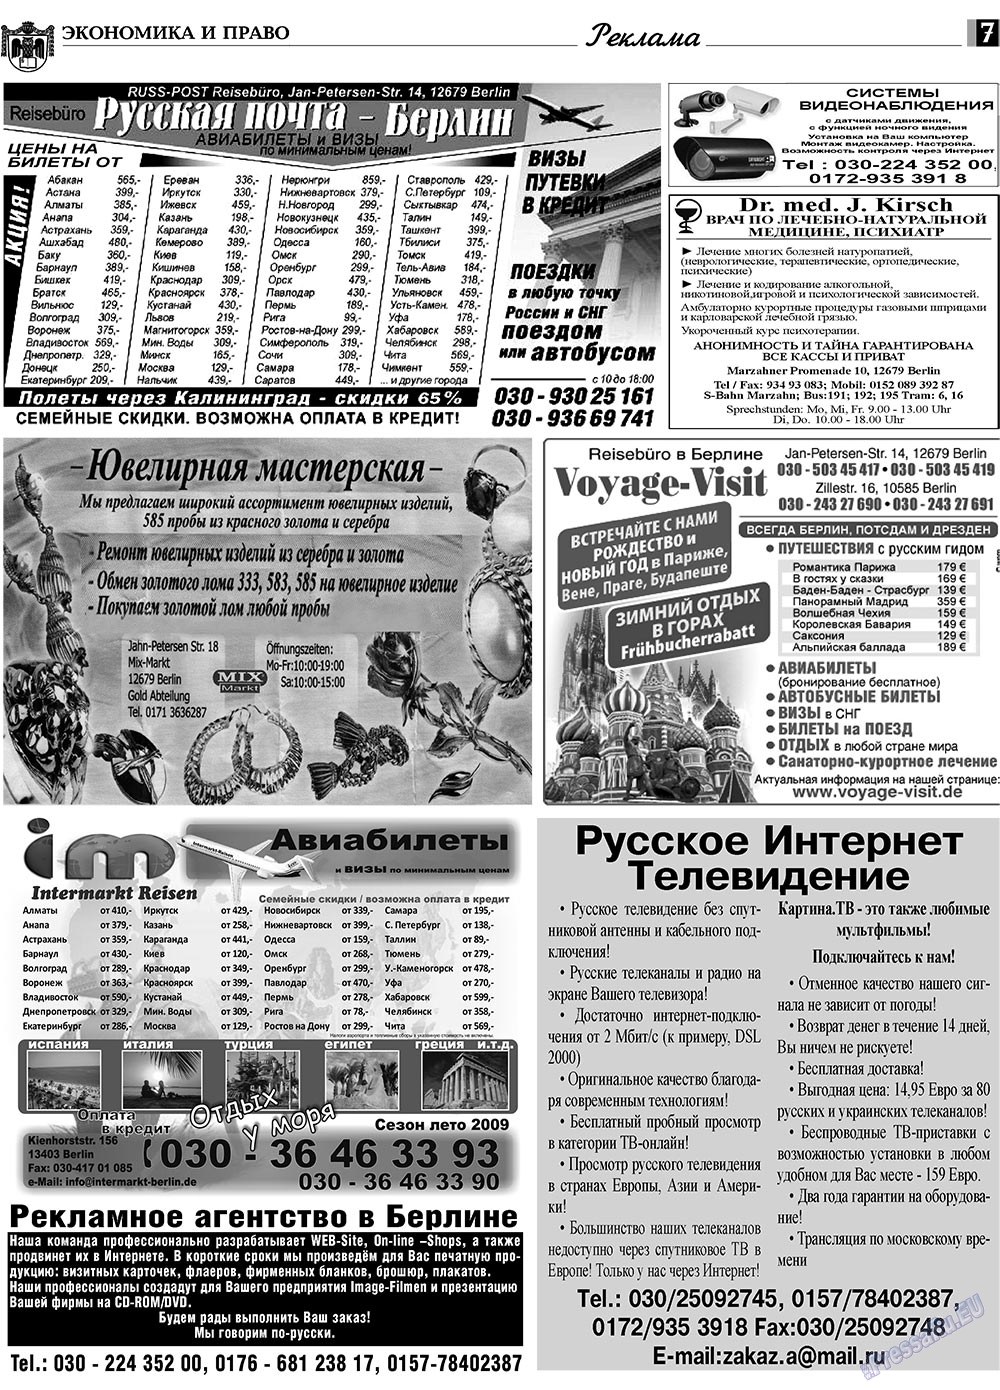 Экономика и право, газета. 2009 №10 стр.7